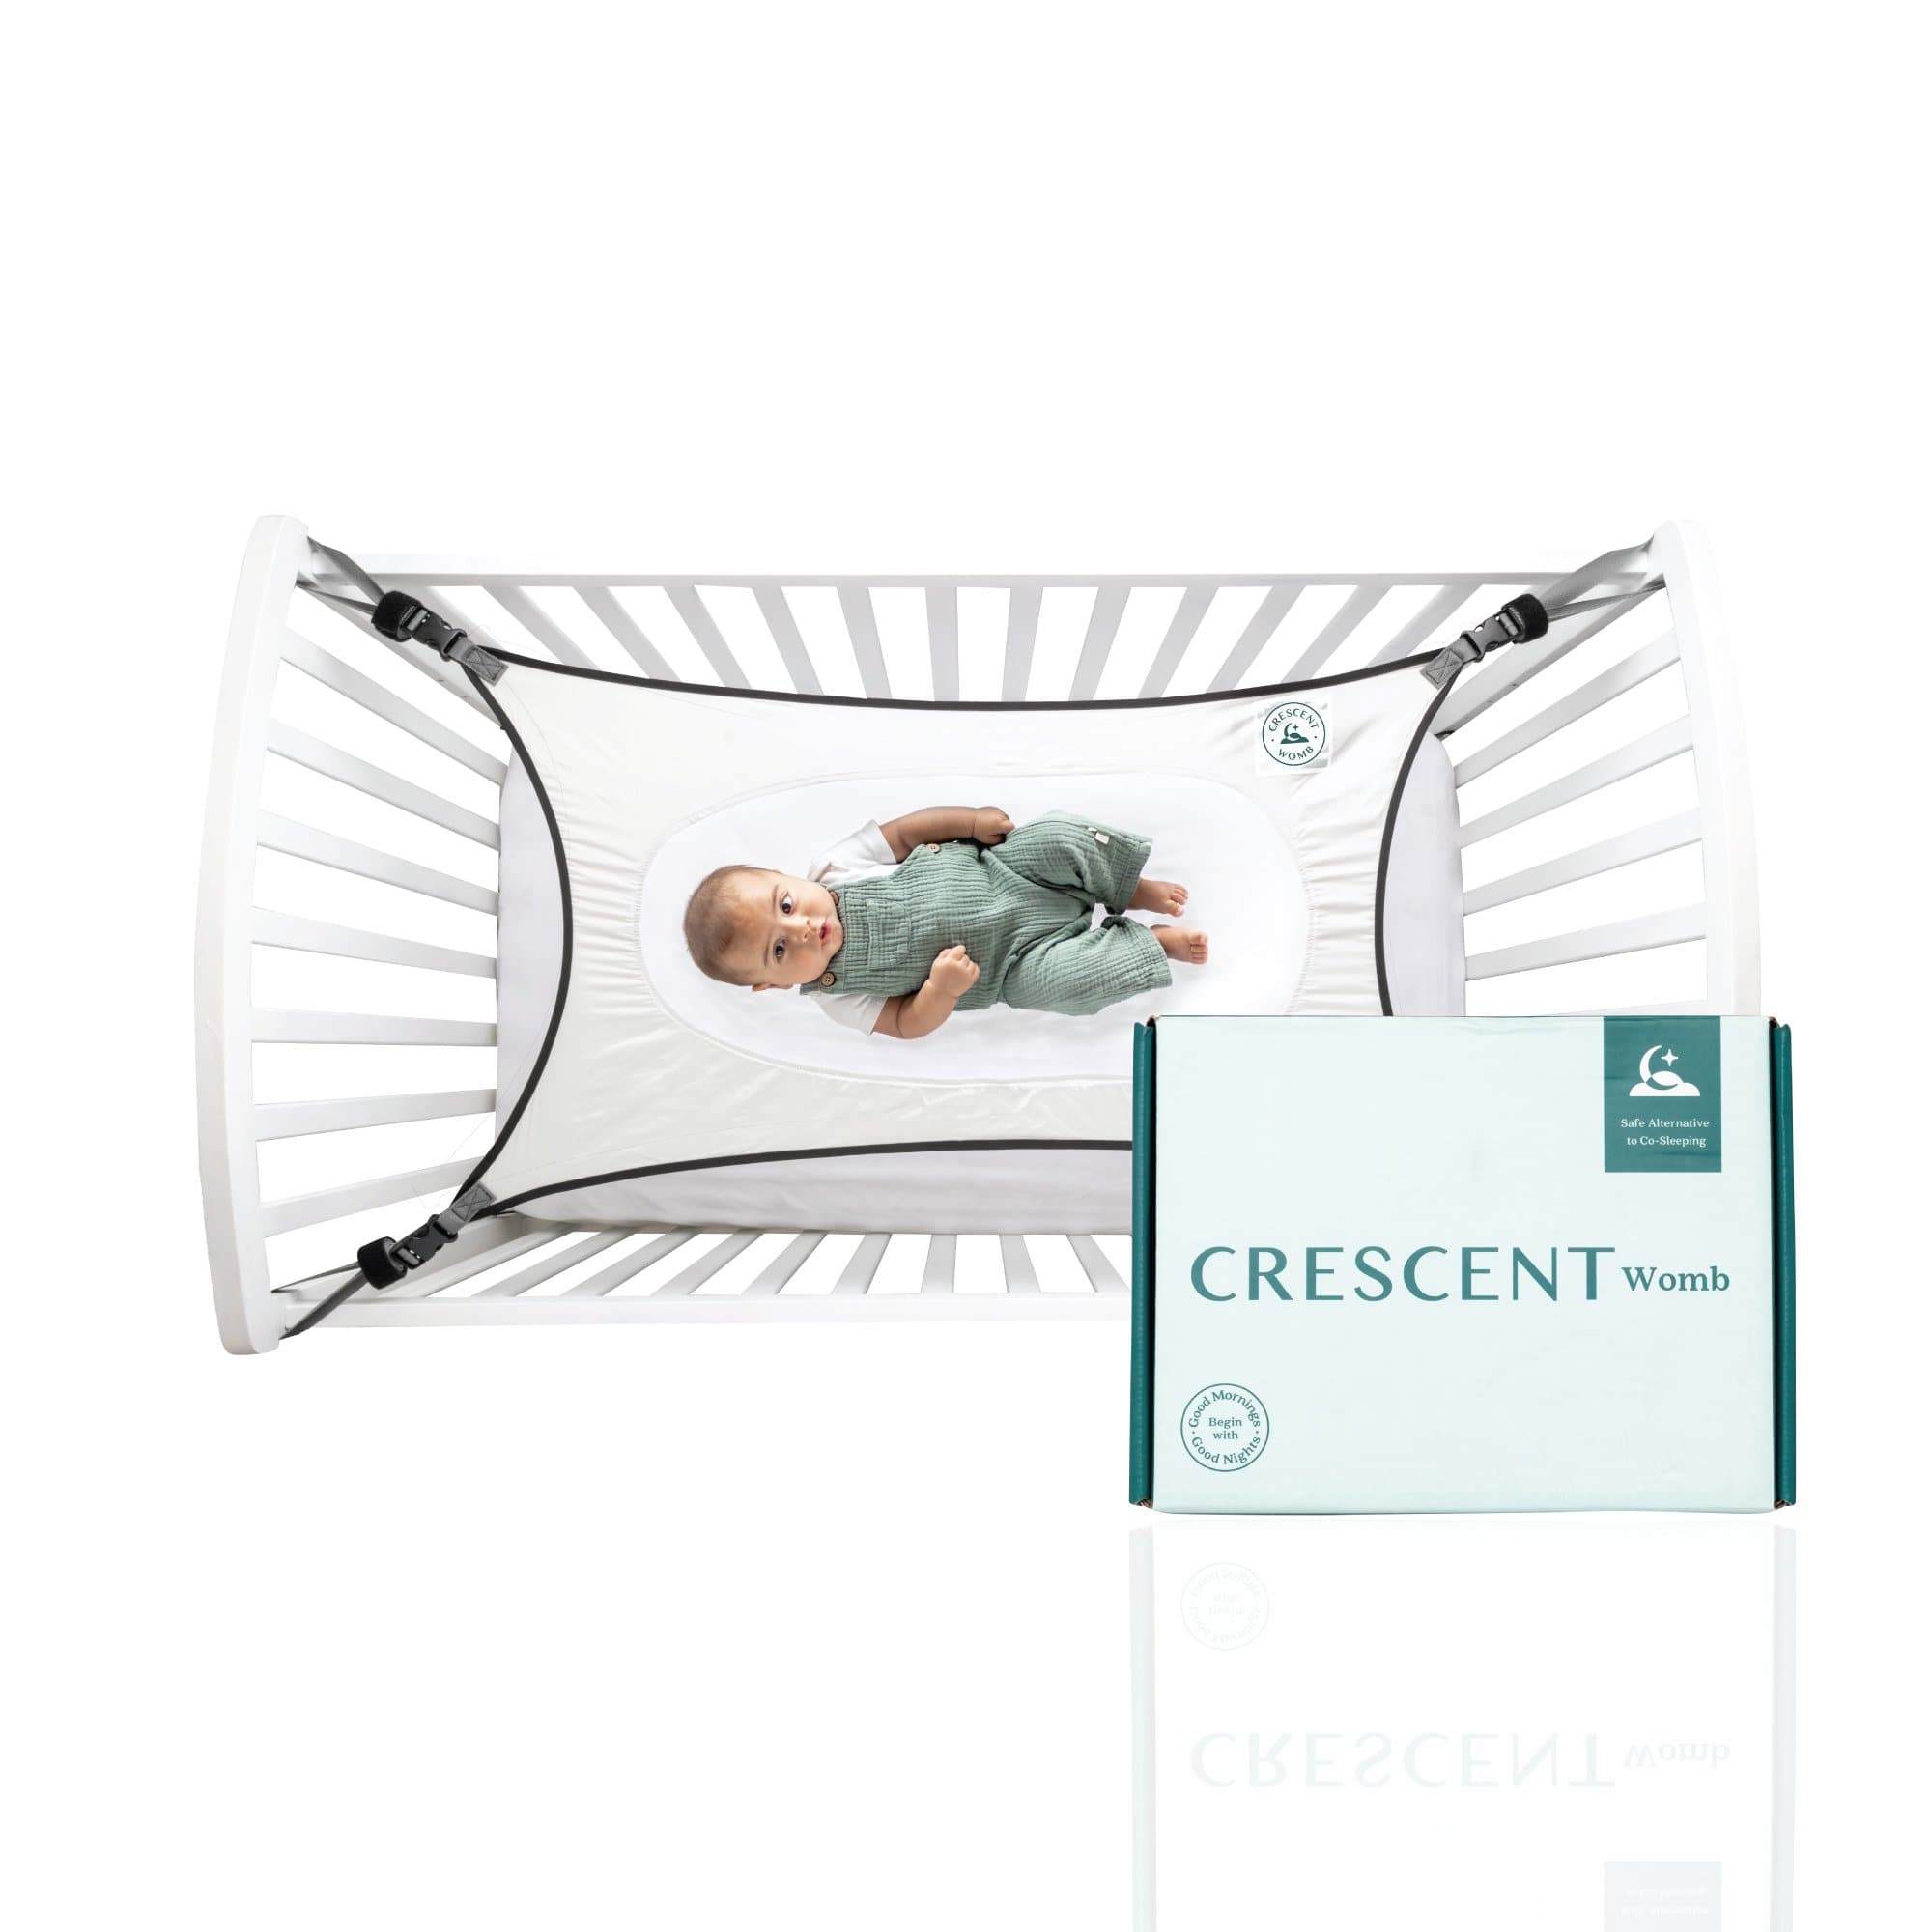 Crescent Womb™ - Crescent Womb